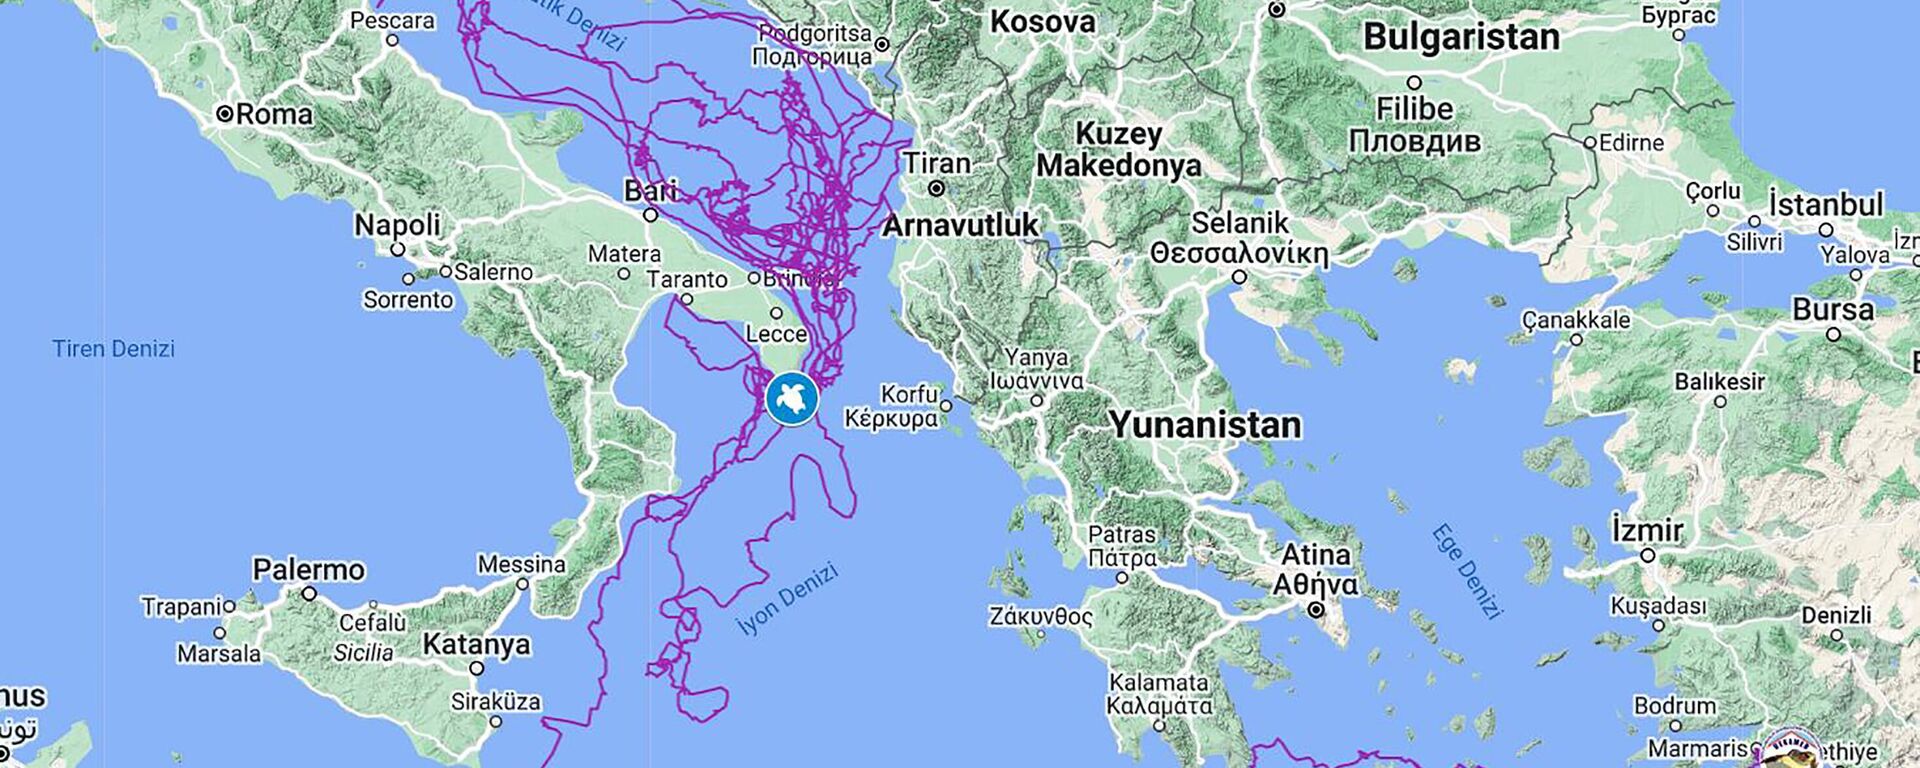 Muğla'nın Ortaca ilçesindeki Deniz Kaplumbağası Araştırma Kurtarma Rehabilitasyon Merkezi (DEKAMER) görevlilerince uydu takip cihazı takılarak denize bırakılan deniz kaplumbağası caretta caretta Tuba, 3,5 yılda 20 bin kilometre yol kat etti ve 8 milyon kişi kaplumbağanın rotasını gösteren haritayı görüntüledi. - Sputnik Türkiye, 1920, 22.03.2023